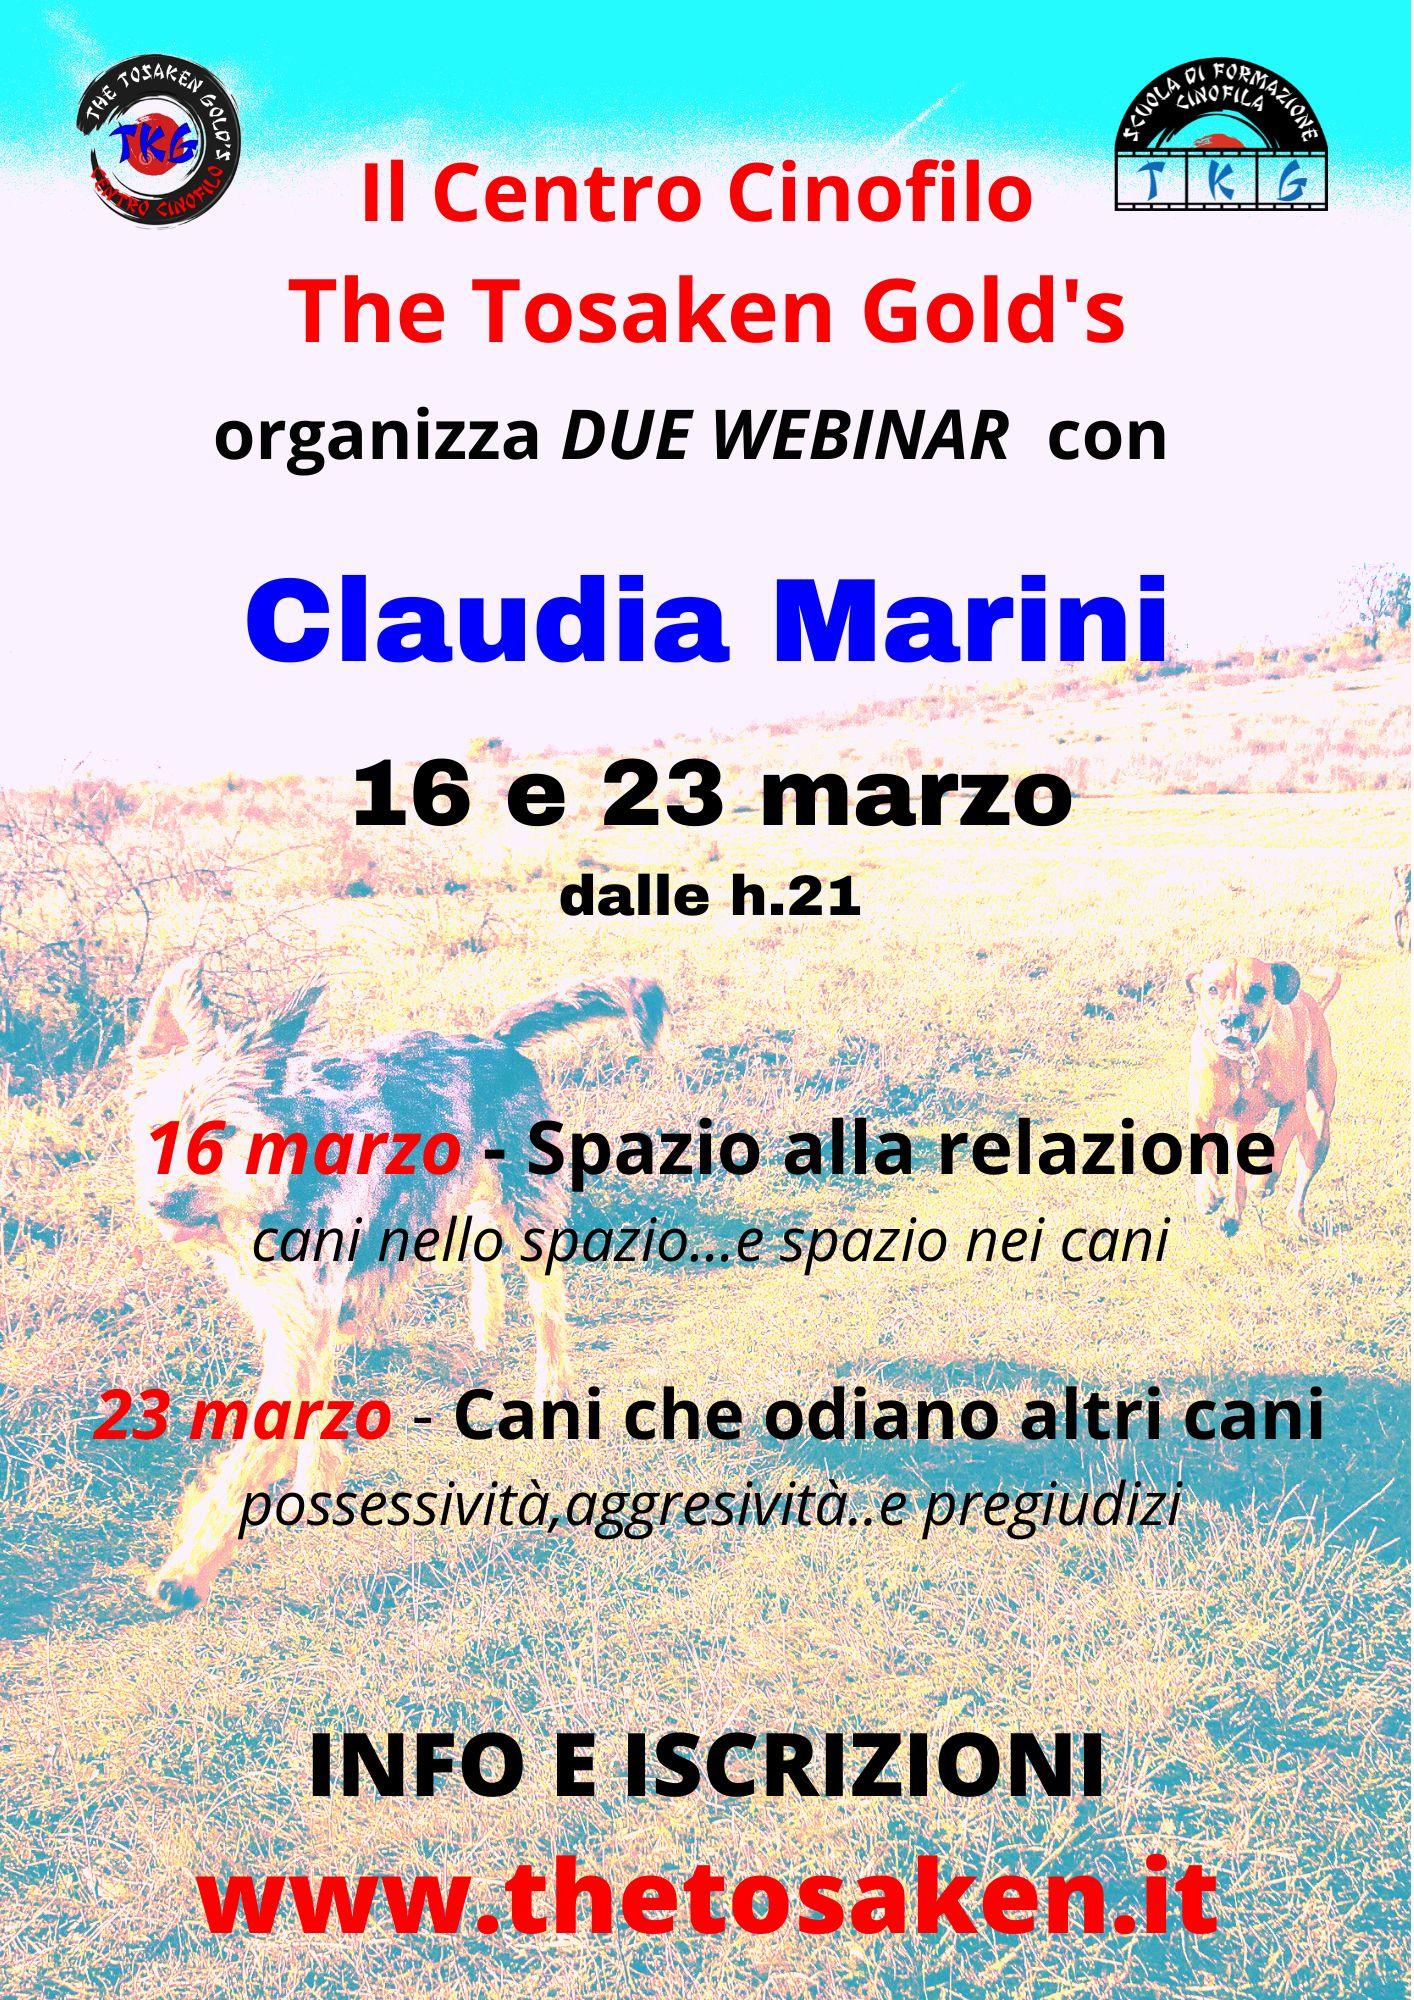 Due webinar con Claudia Marini